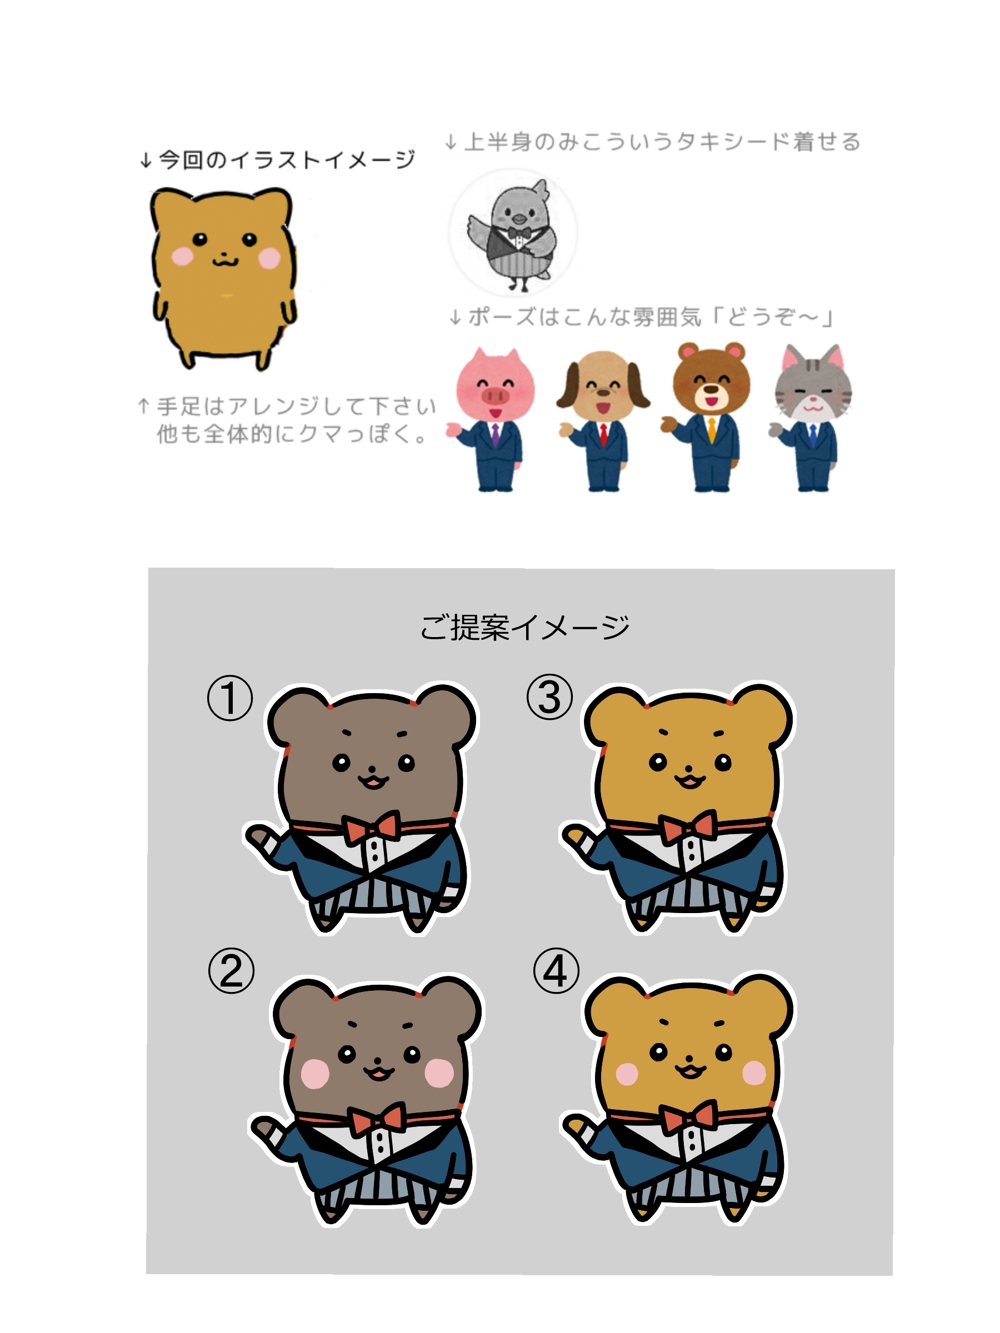 【ゆるキャラ1万原案決定済】マッチングアプリのマスコットキャラクターのイラスト制作